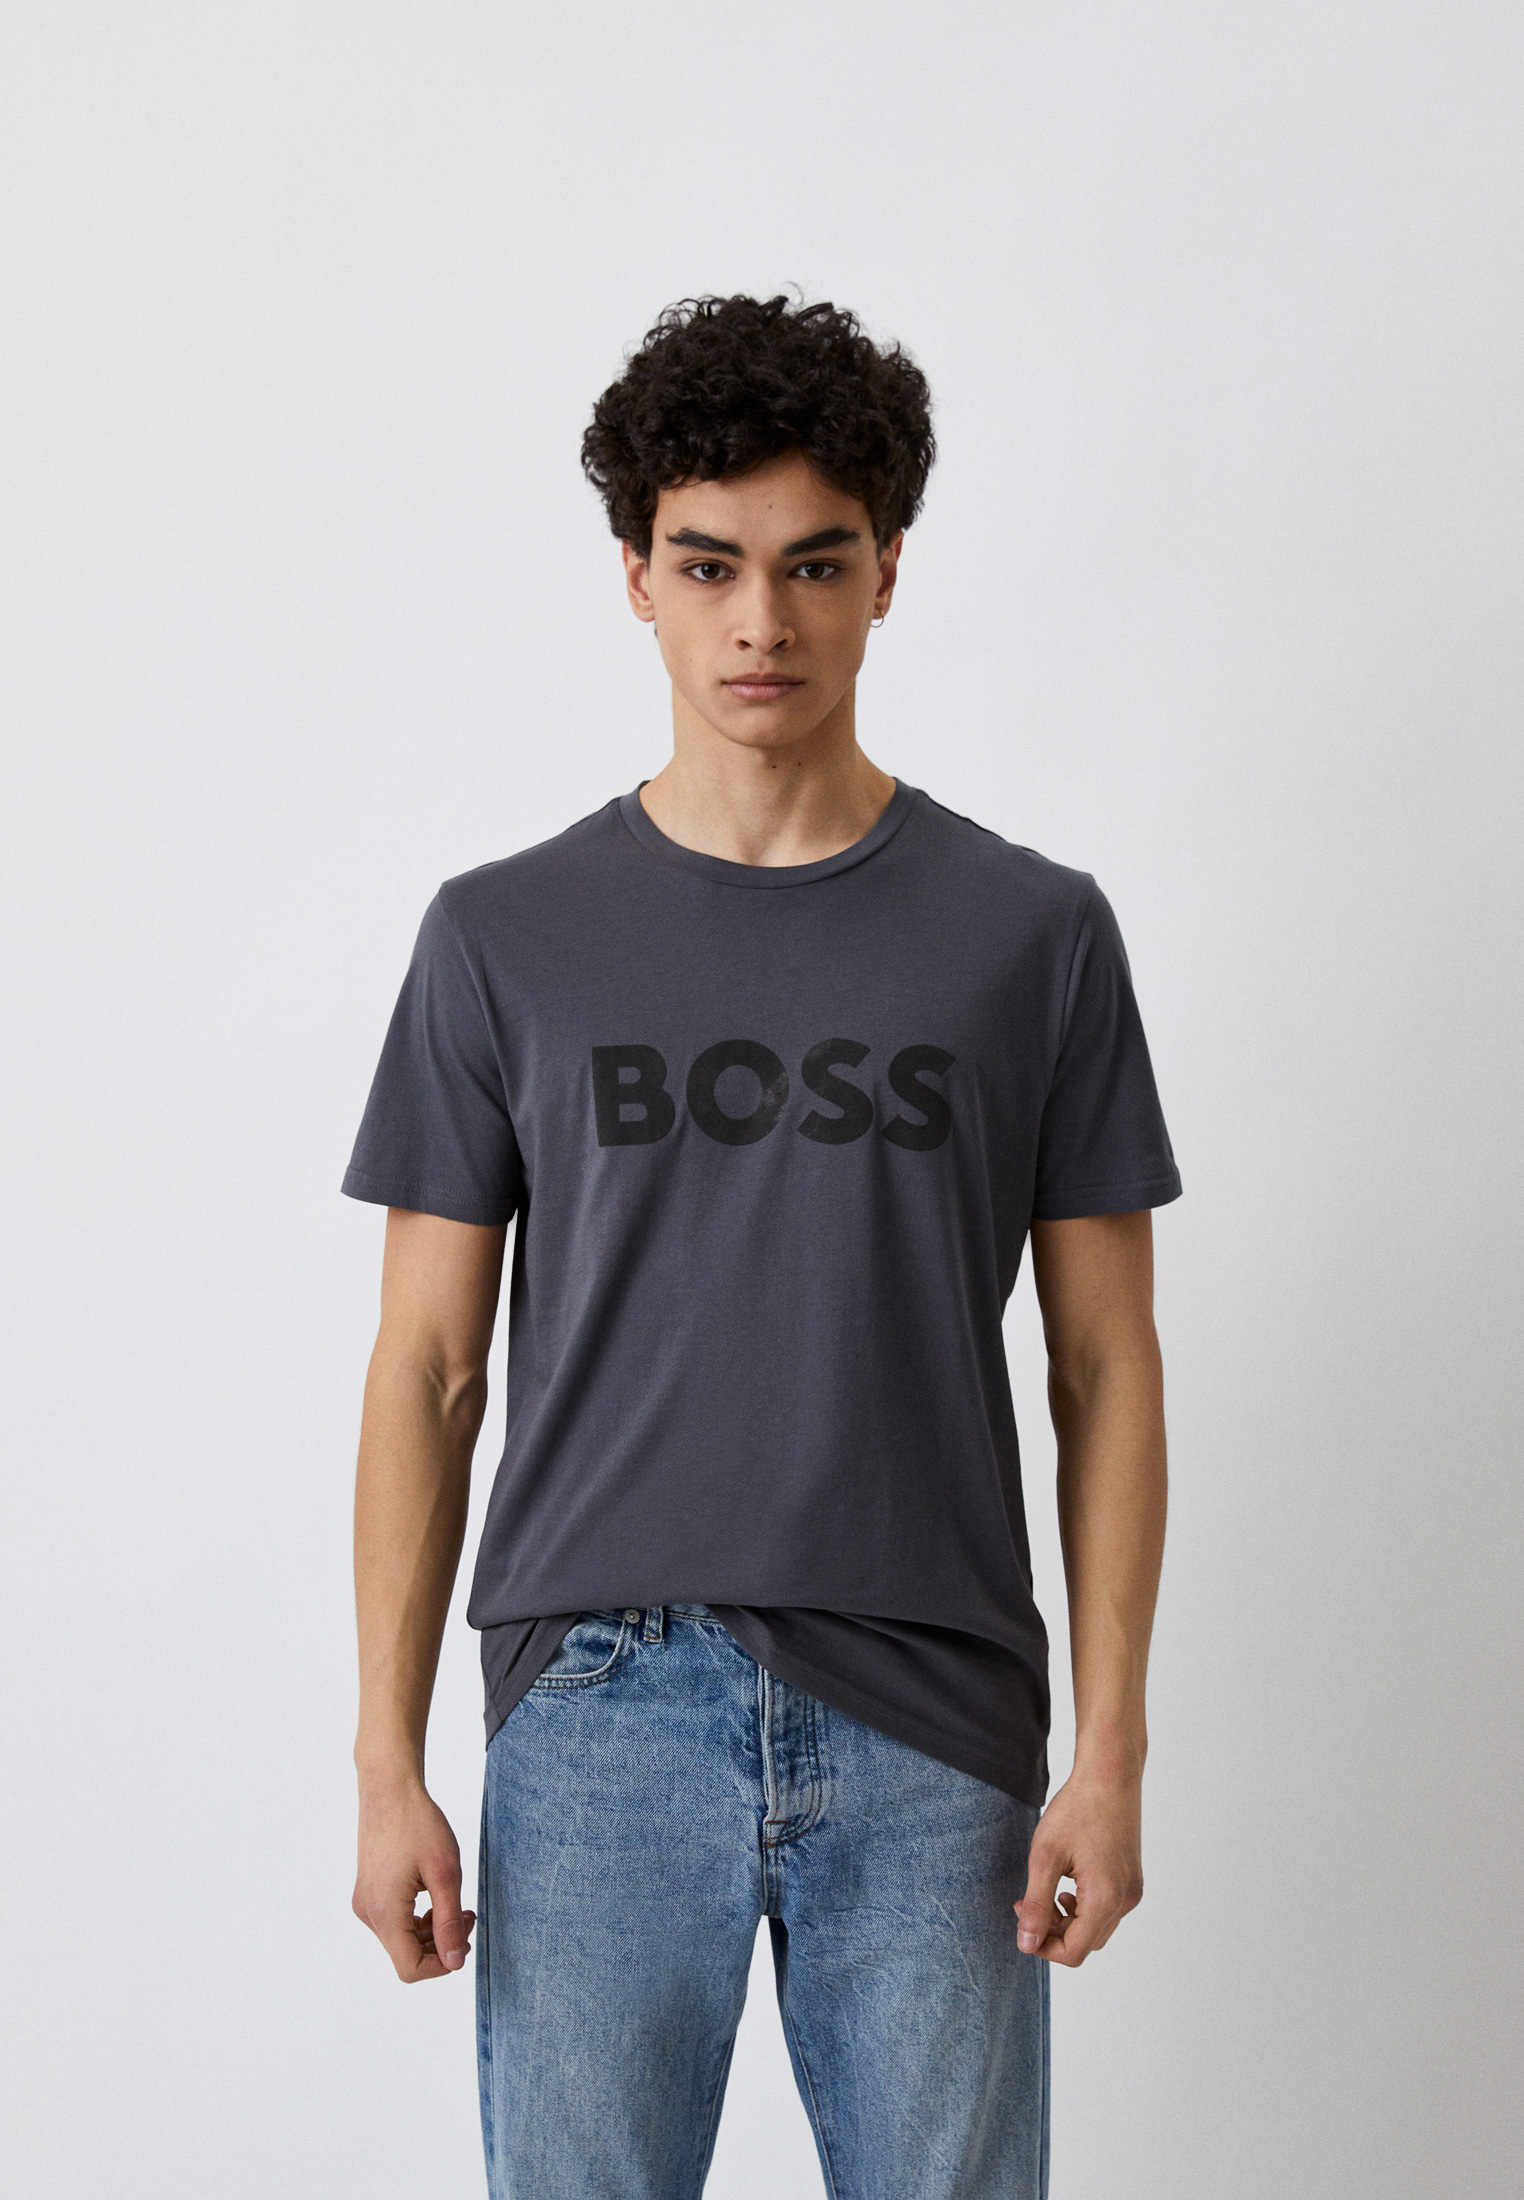 Мужская футболка Boss (Босс) 50481923: изображение 1